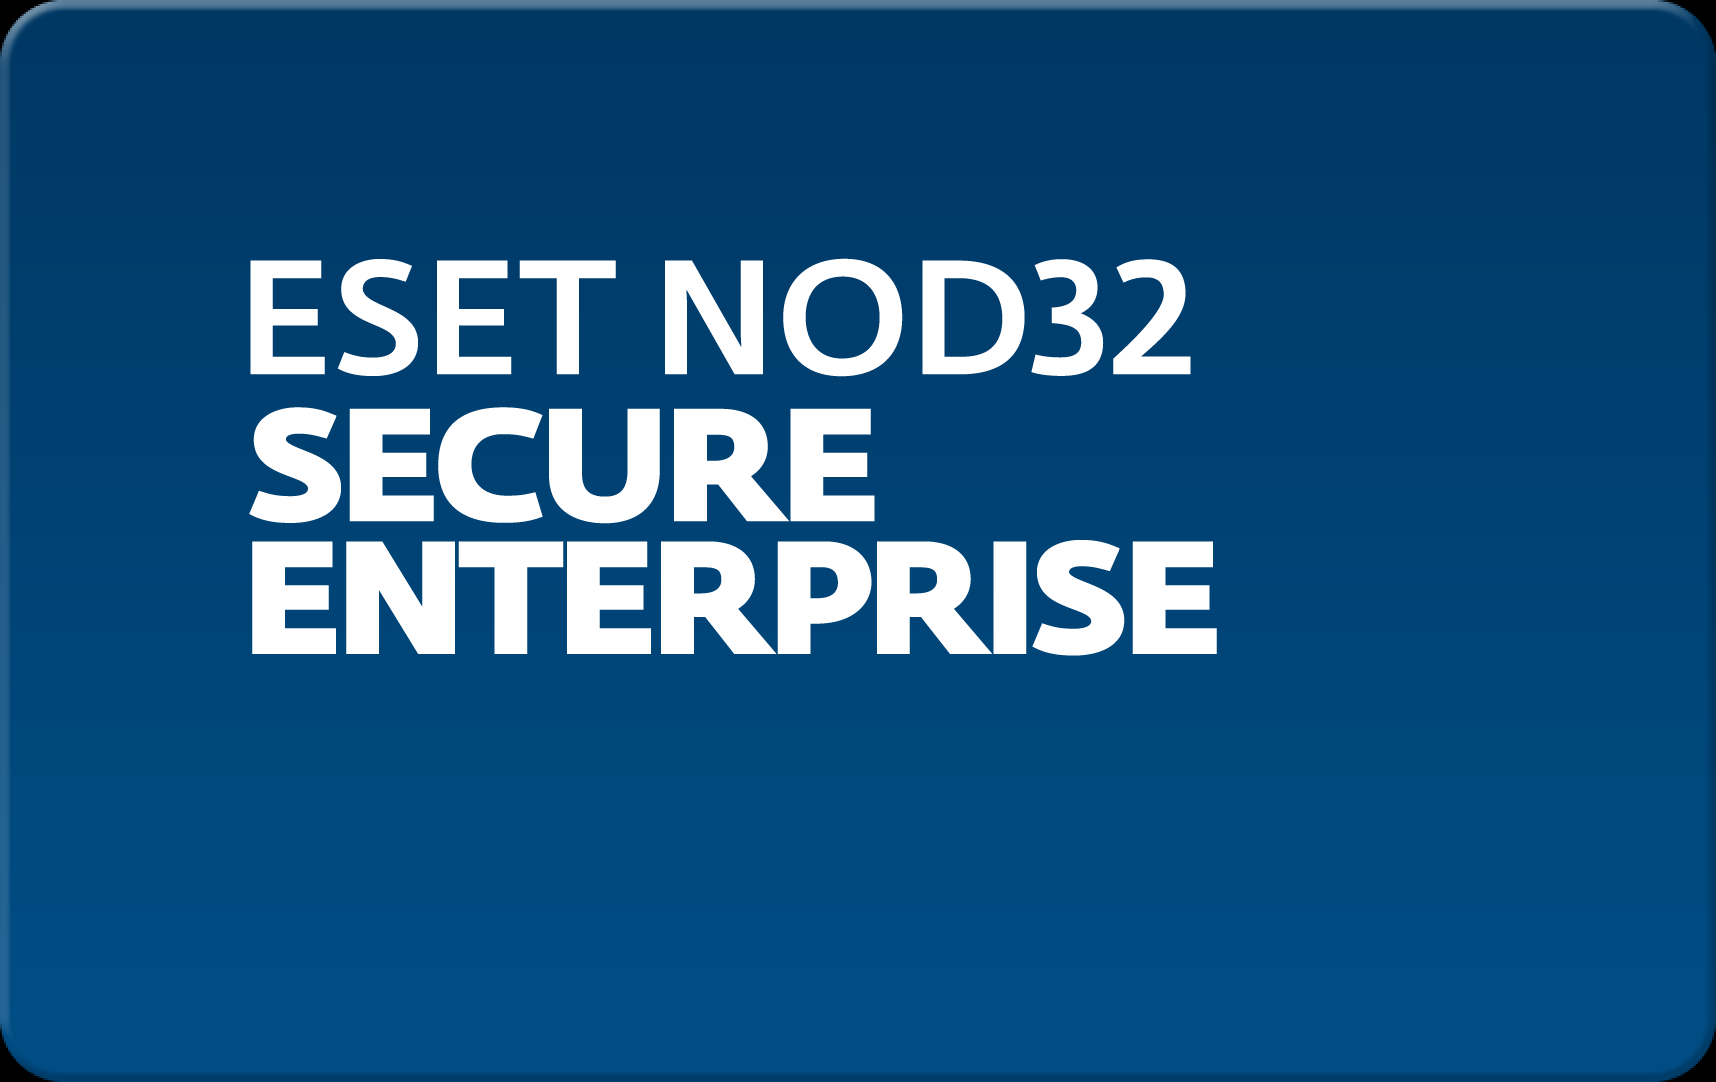        Eset NOD32 Secure Enterprise  168  NOD32-ESE-NS-1-168  #1